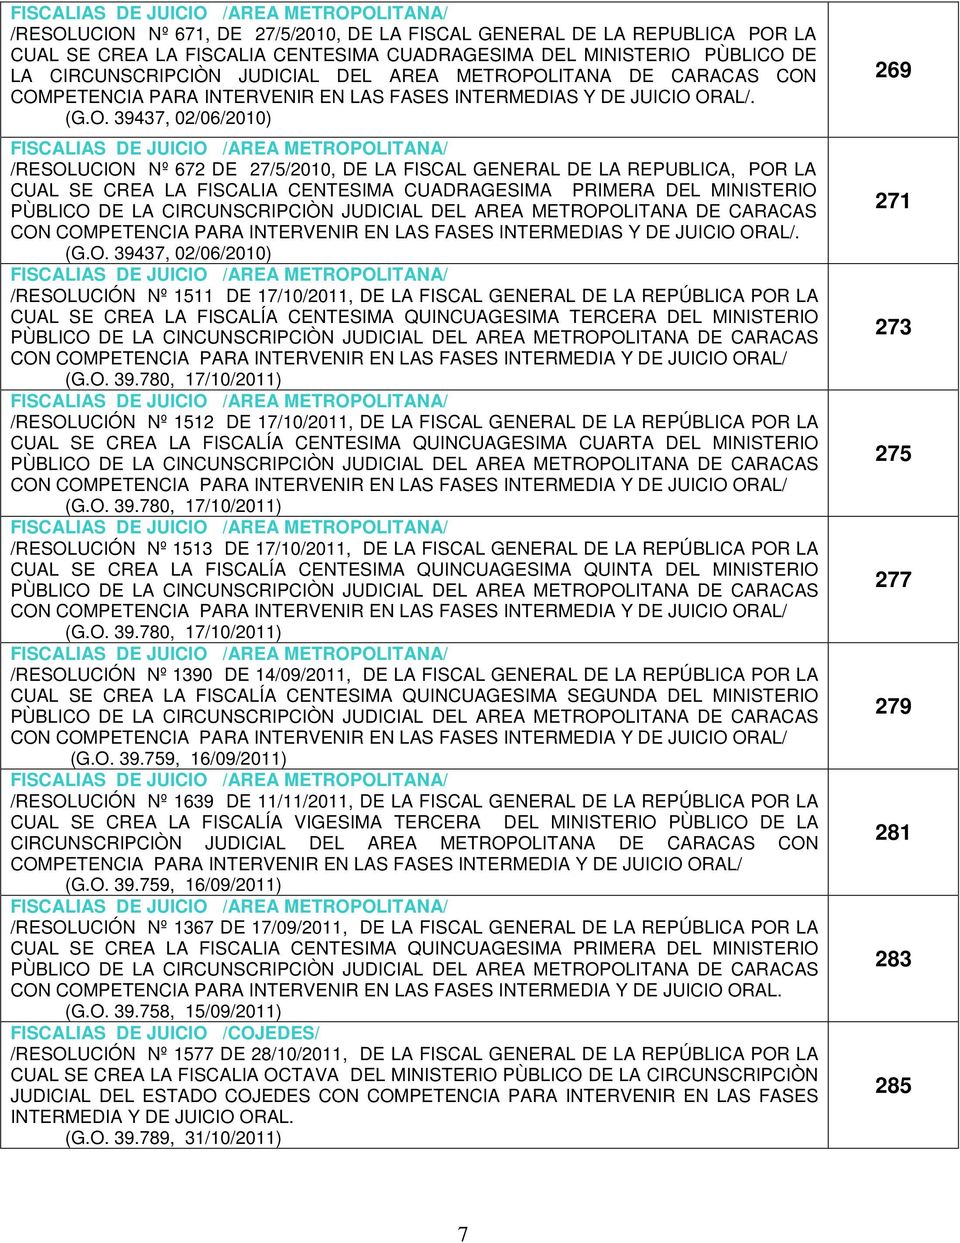 OLITANA DE CARACAS CON COMPETENCIA PARA INTERVENIR EN LAS FASES INTERMEDIAS Y DE JUICIO ORAL/. (G.O. 39437, 02/06/2010) FISCALIAS DE JUICIO /AREA METROPOLITANA/ /RESOLUCION Nº 672 DE 27/5/2010, DE LA